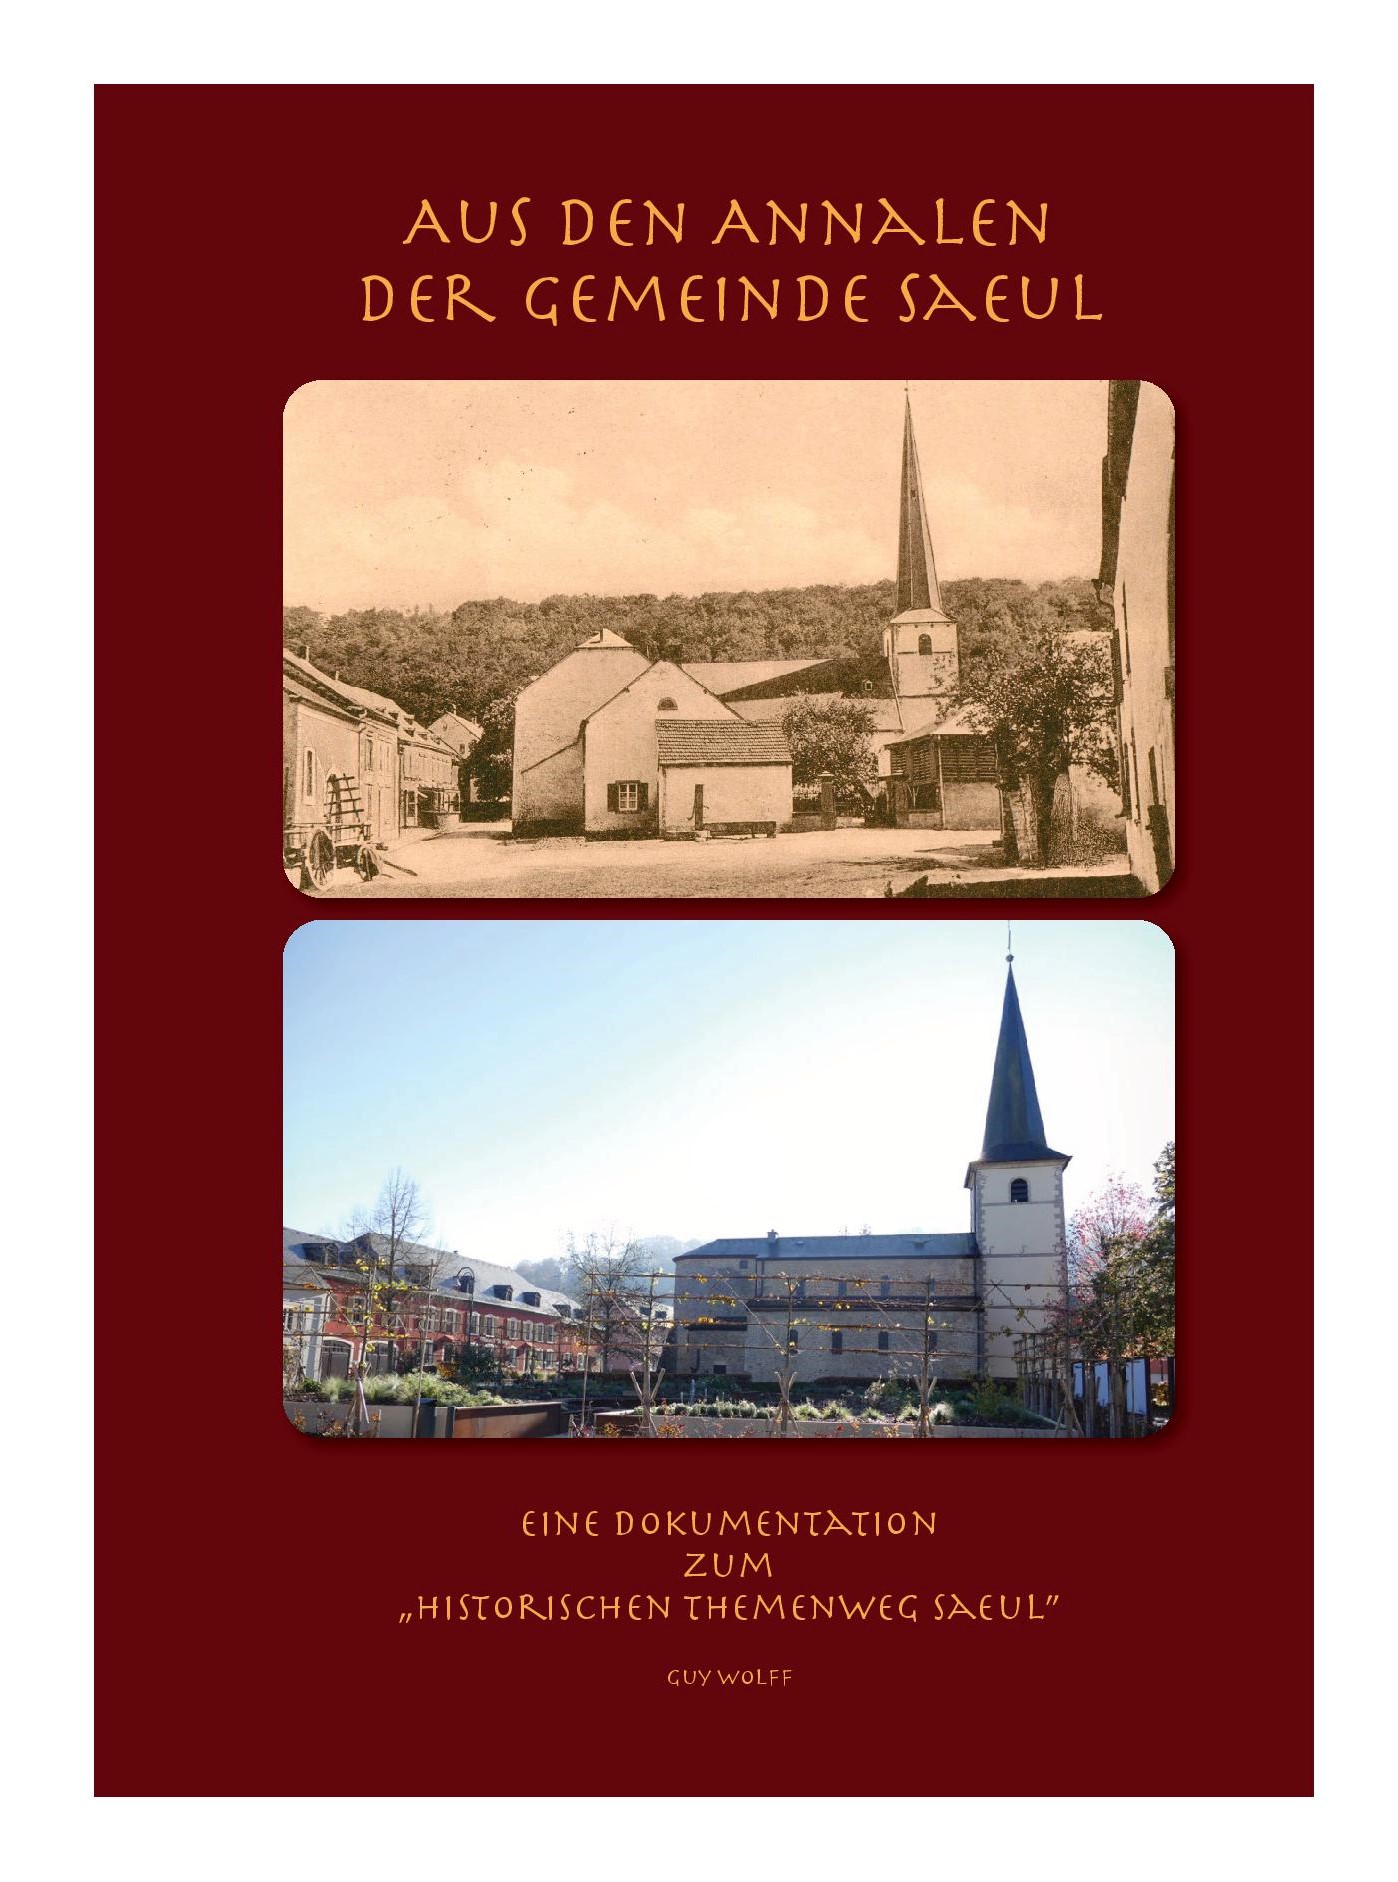 Publication de la chronique "Aus den Annalen der Gemeinde Saeul" de Guy Wolff / Préinscription au tarif préférentiel de 75,- EUR jusqu'au 31/01/2023 inclus